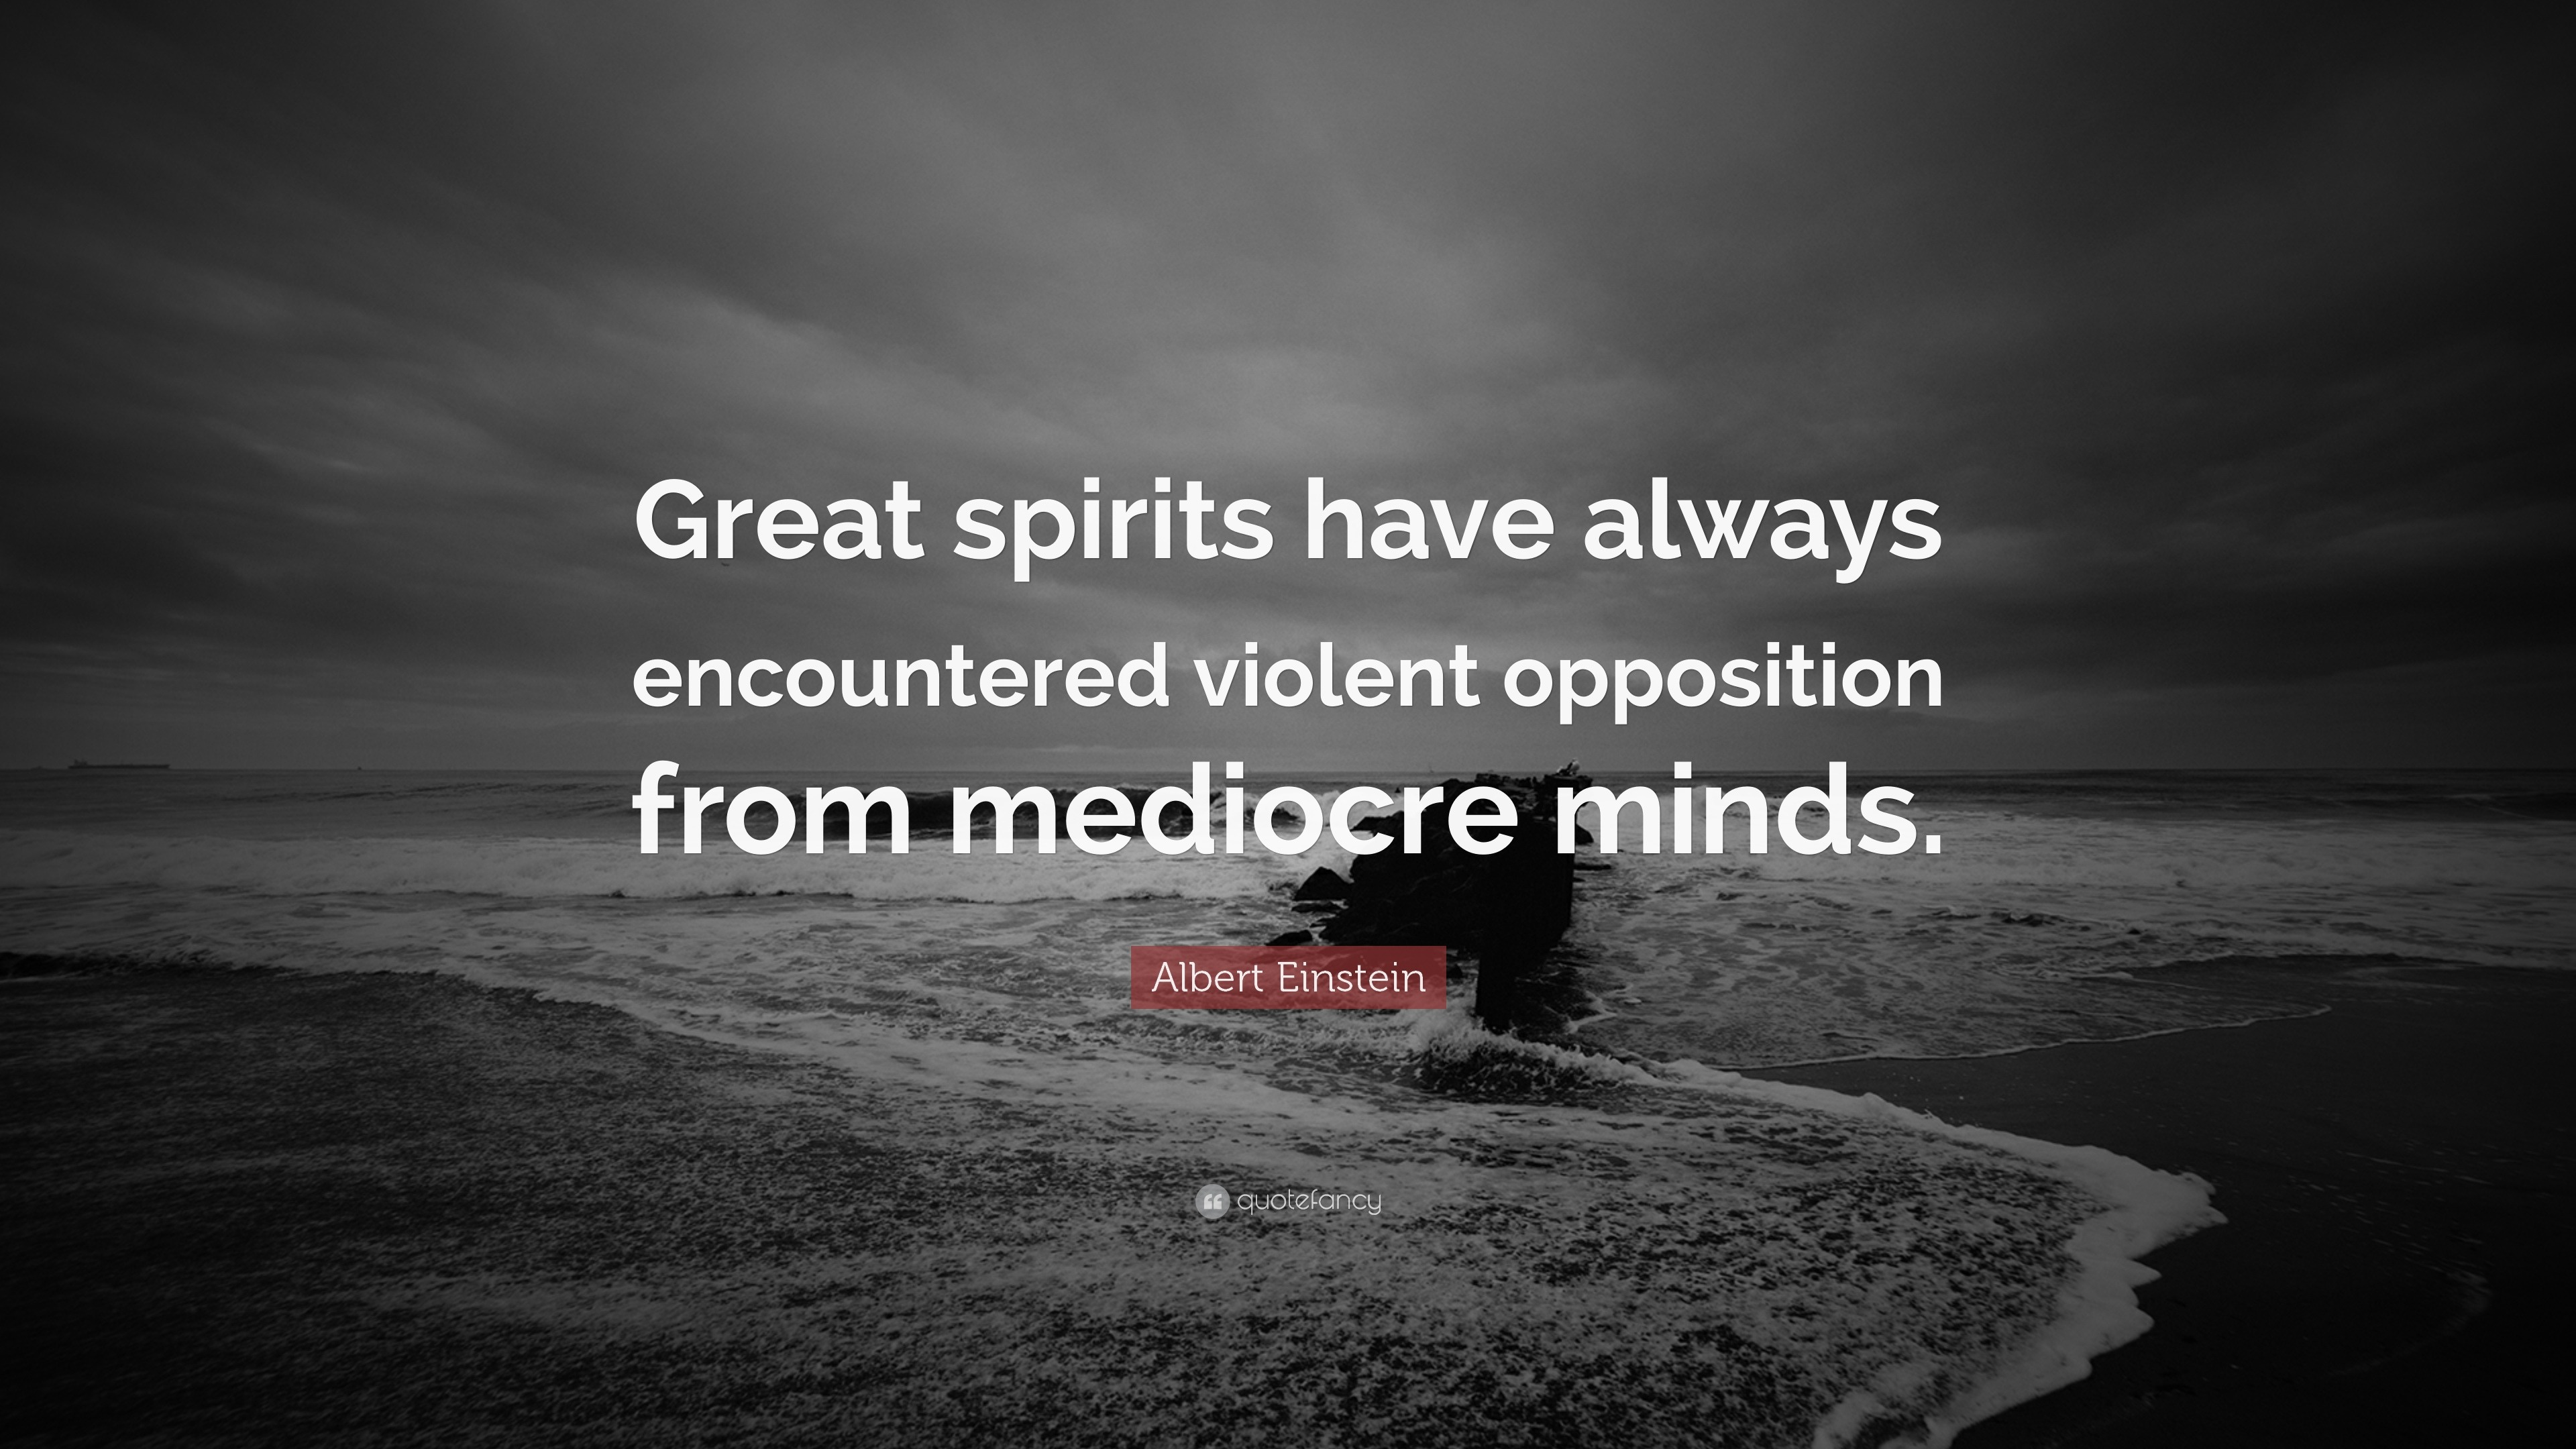 Albert Einstein Quote: “Great spirits have always encountered violent